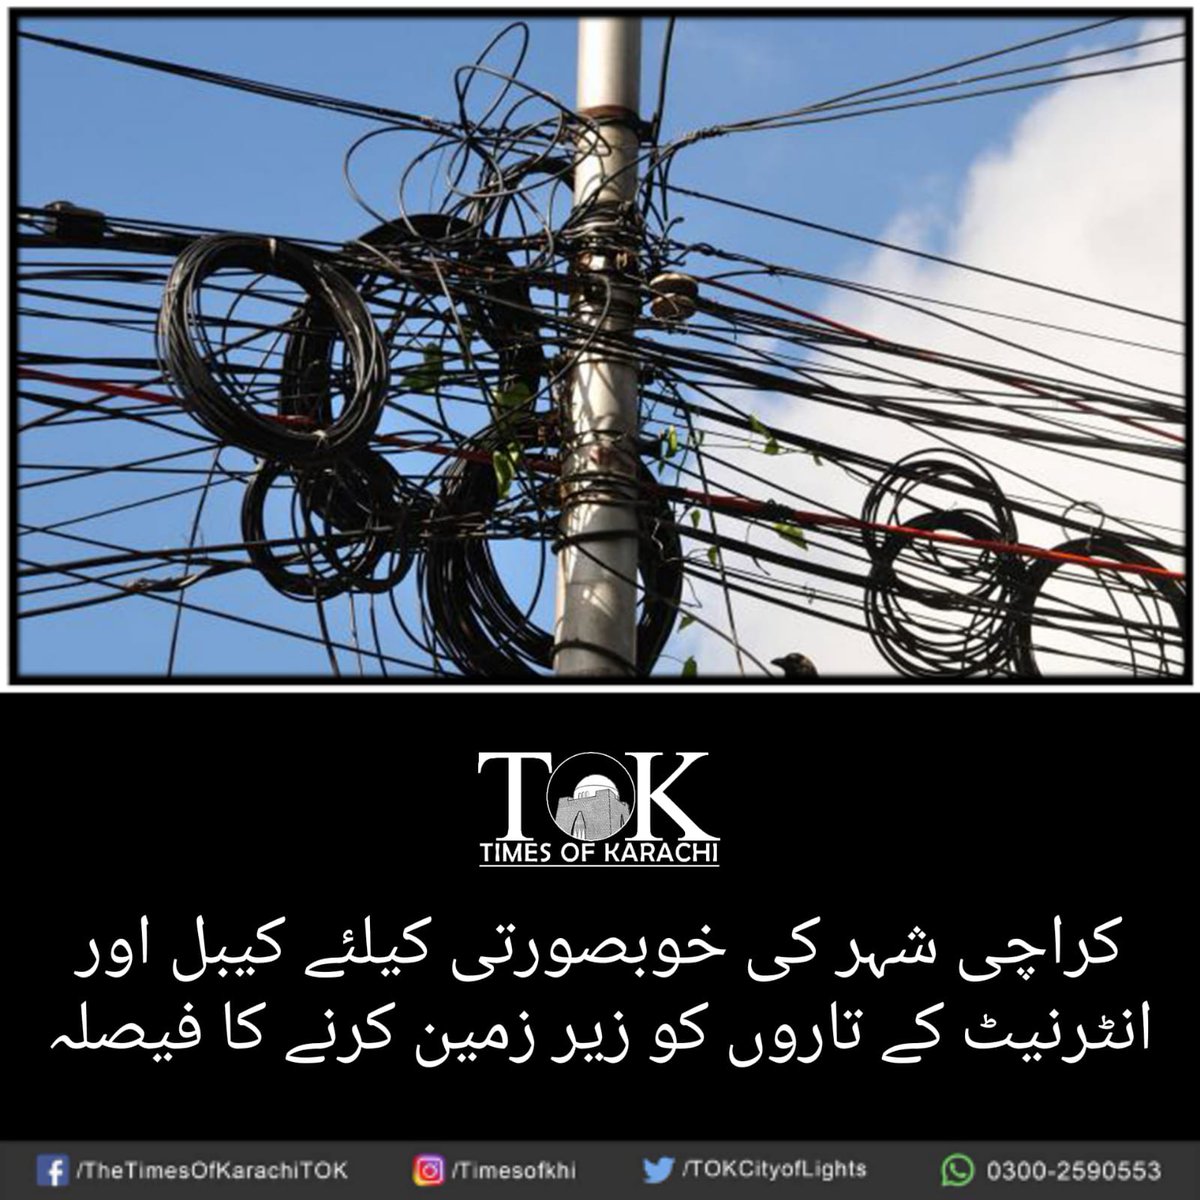 کراچی شہر کی خوبصورتی میں اضافے کے پیش نظر کیبل اور انٹرنیٹ کے تاروں کو زیر زمین کرنے کا فیصلہ کیا گیا ہے۔ #TOKAlert #Karachi تفصیلات، bit.ly/3eMDOtC